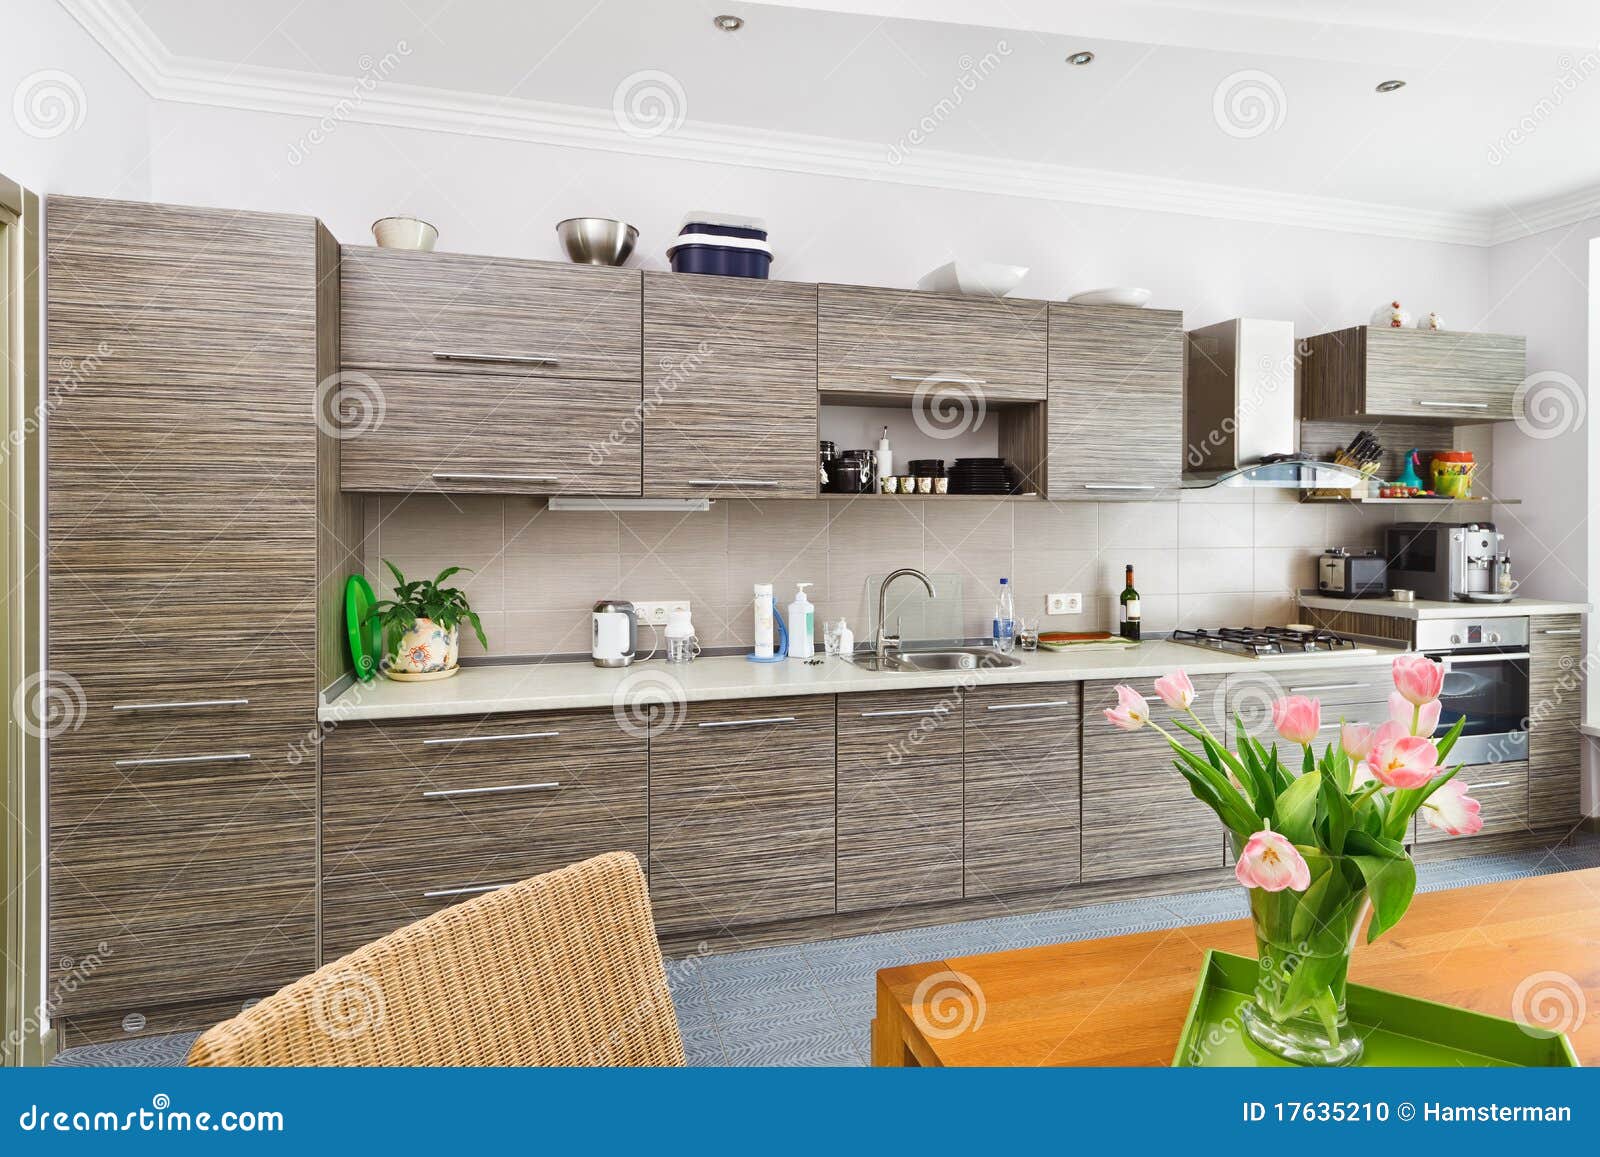 modern minimalism style kitchen interior